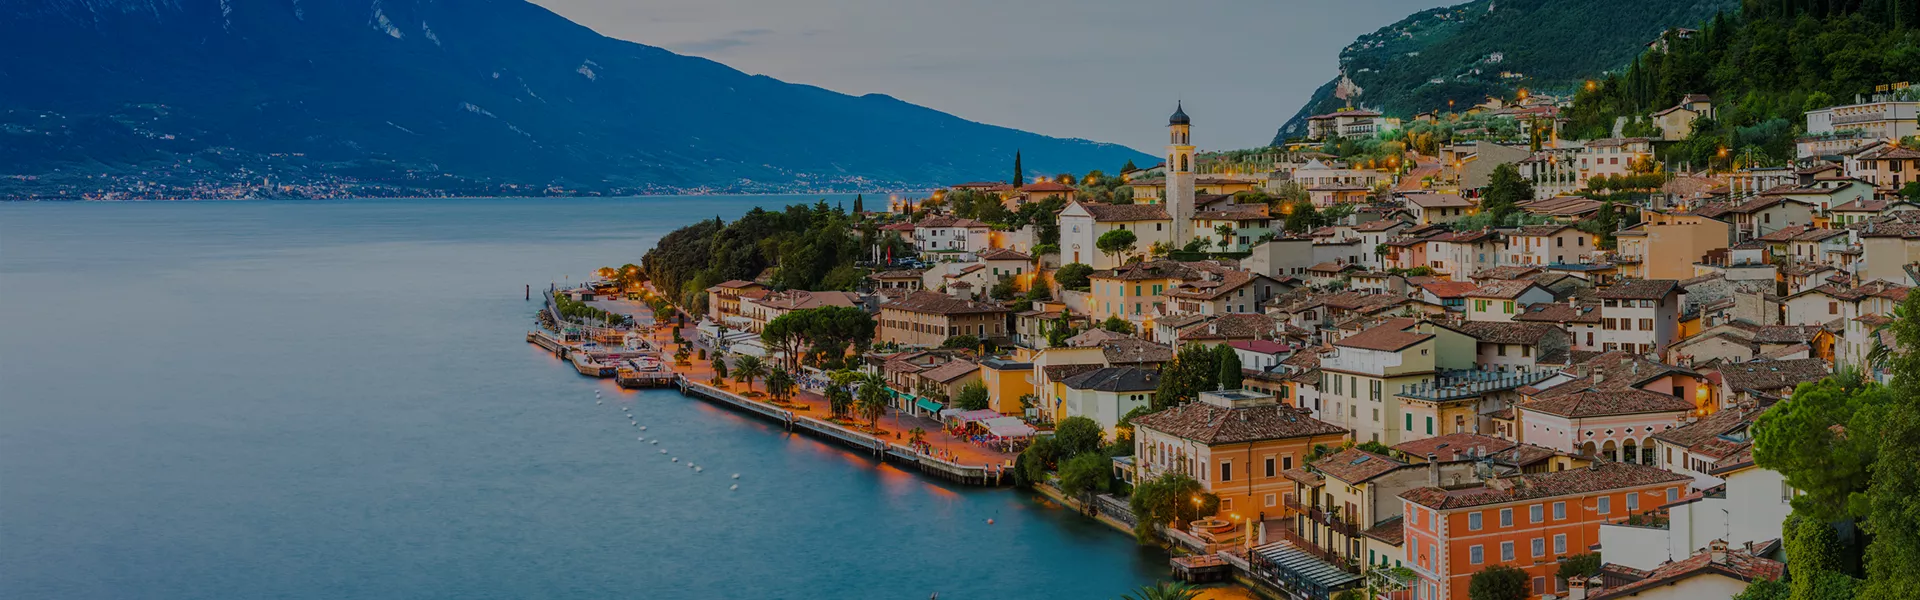 Limone Sul Garda Lake Garda Italy 915383214 Darker 2600X1300